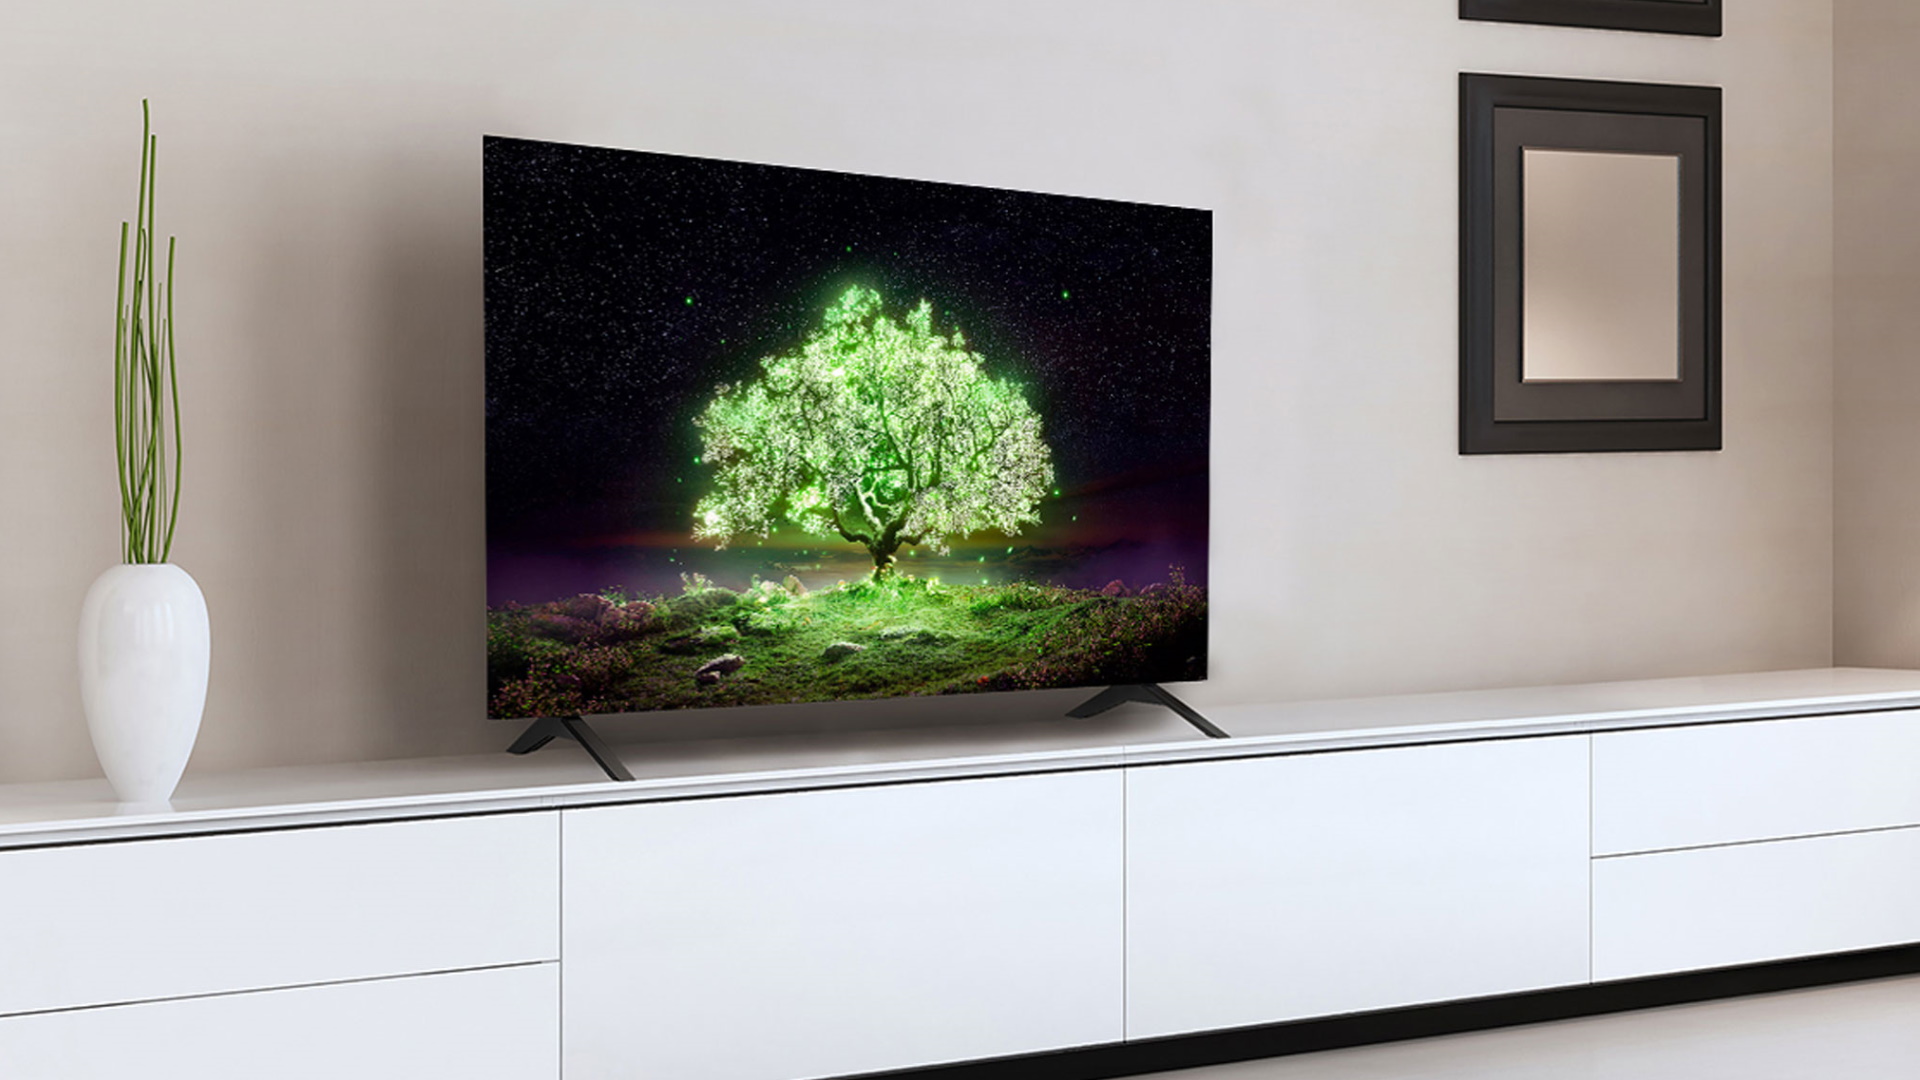 LG A1 OLED TV deal